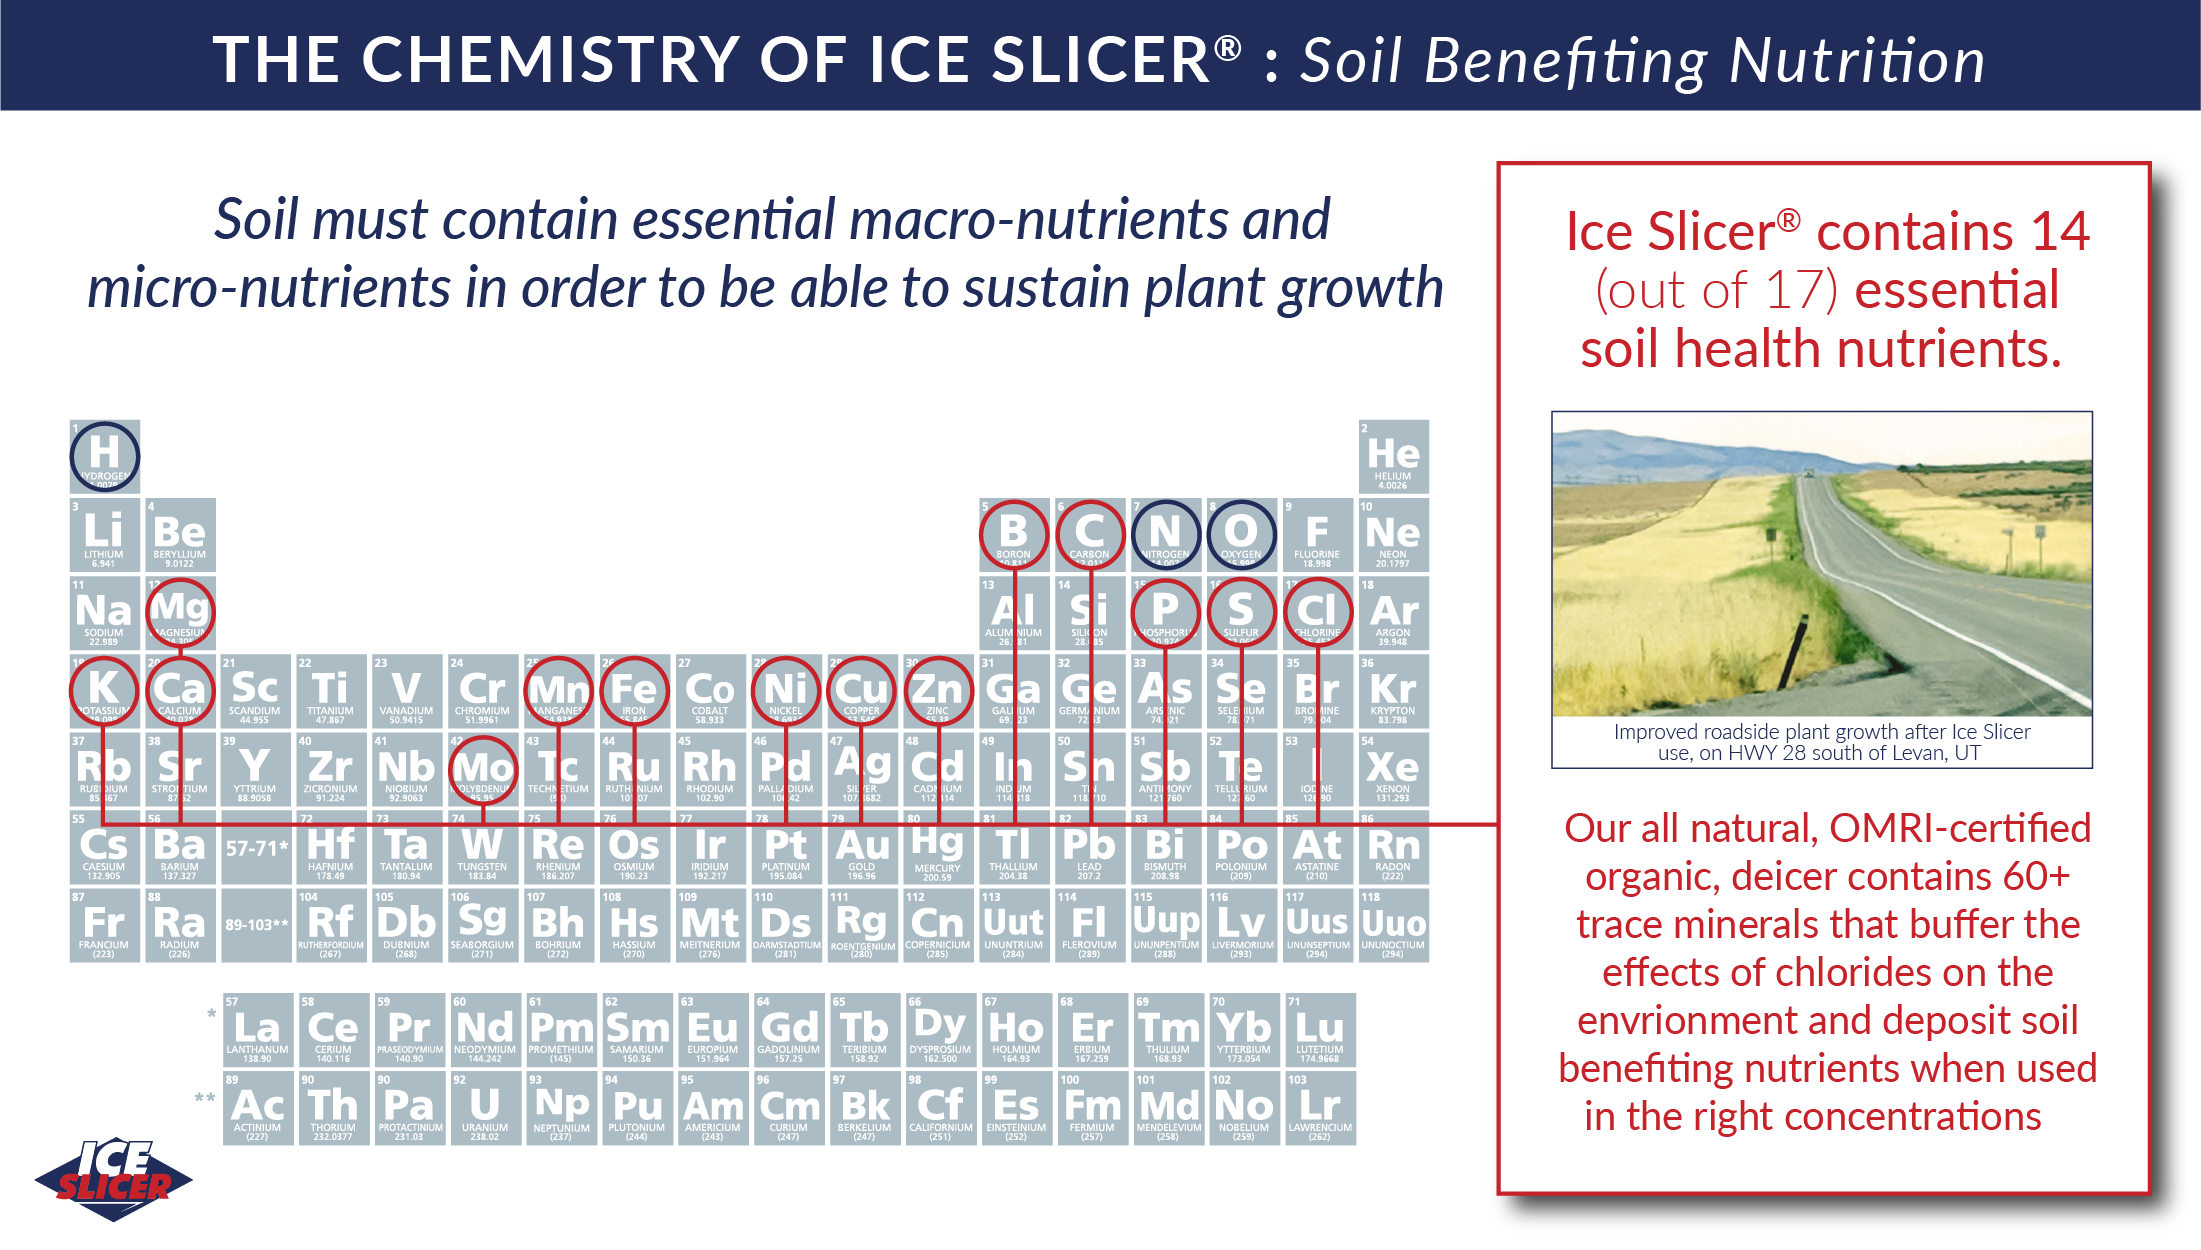 Ice Slicer is a plant safe deicer